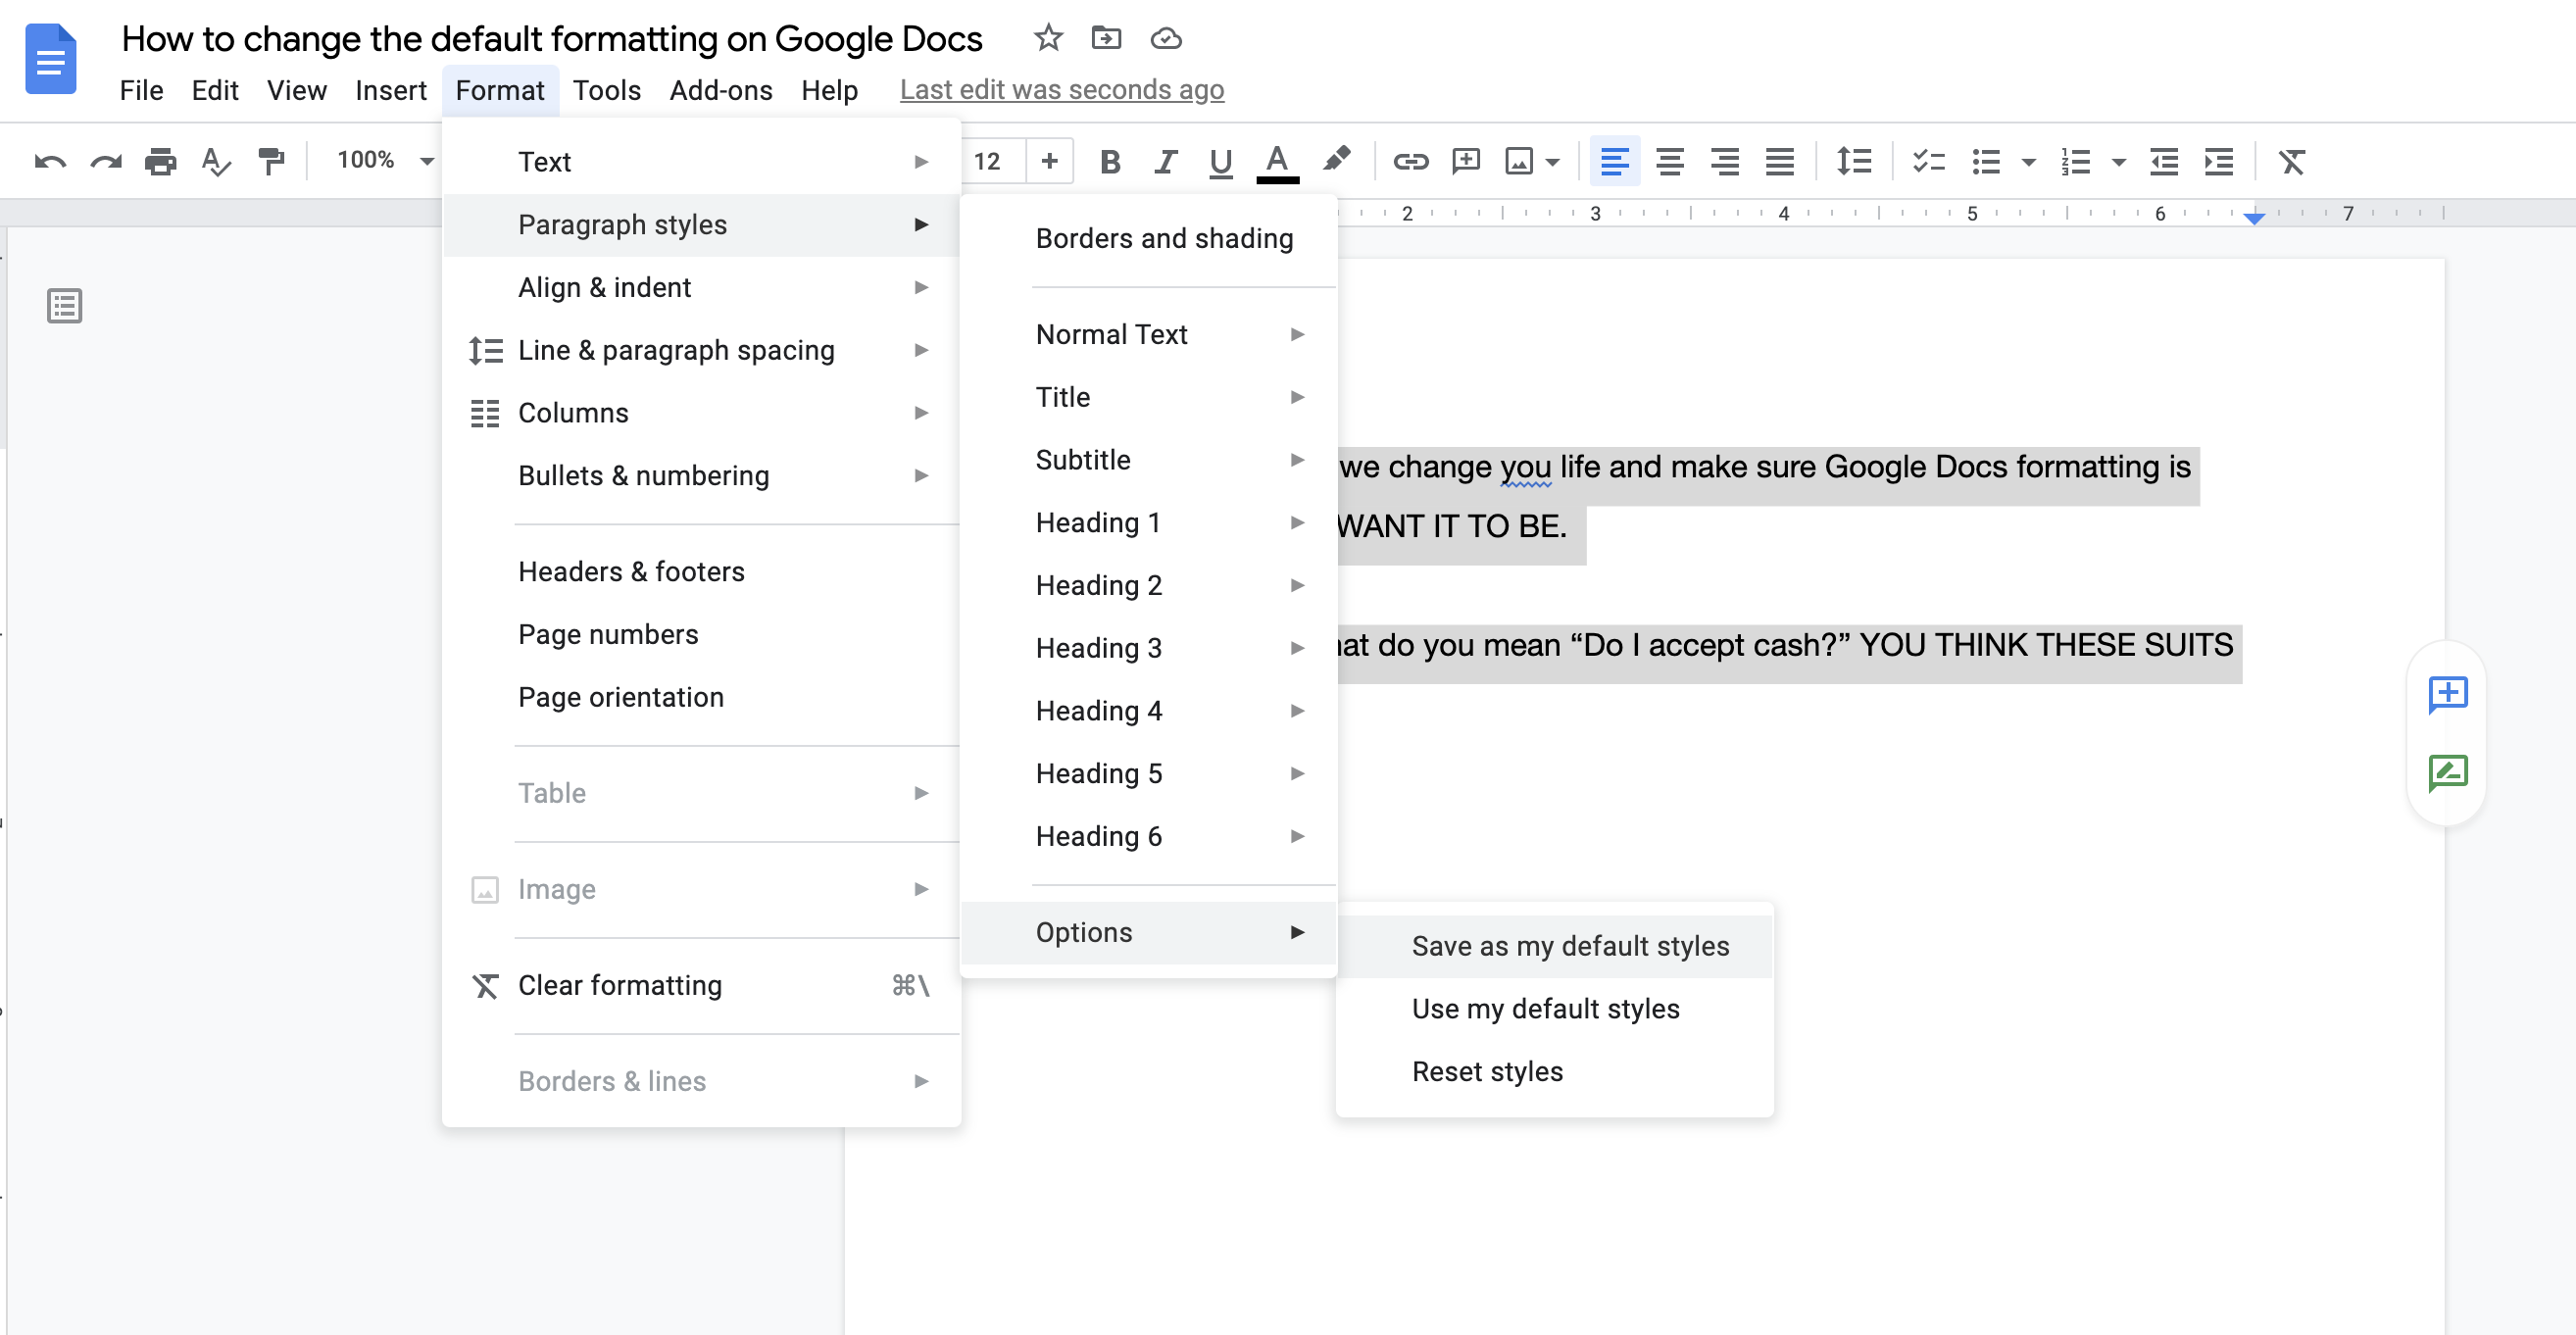 cambiar el formato predeterminado en Google Docs segundo paso